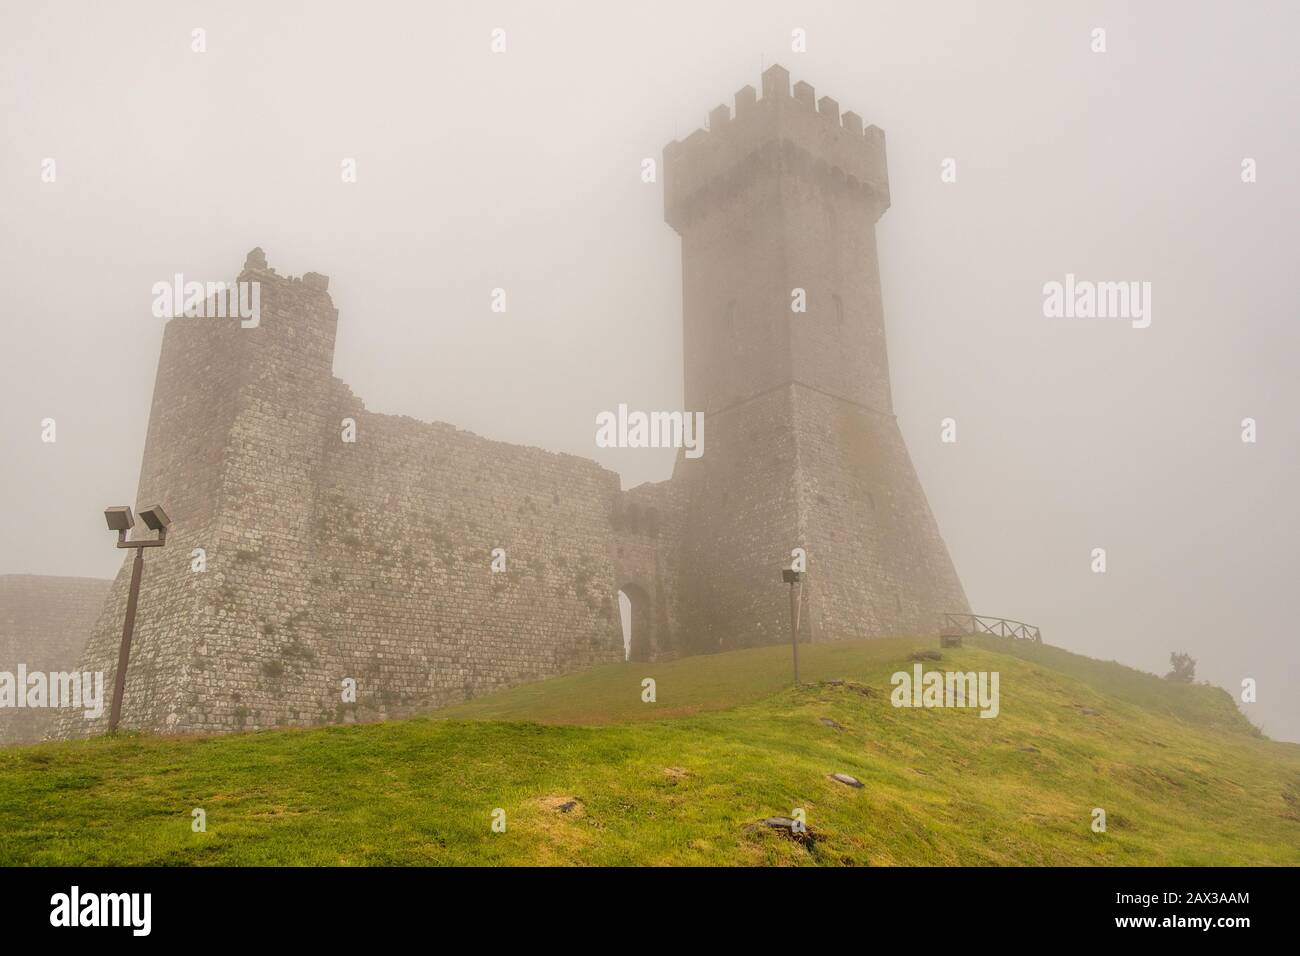 Castello di Radicofani in nebbia situato in posizione strategica sulla Via Francigena, con fortificazioni per fermare l'avanzata di Federico Barbaros Foto Stock